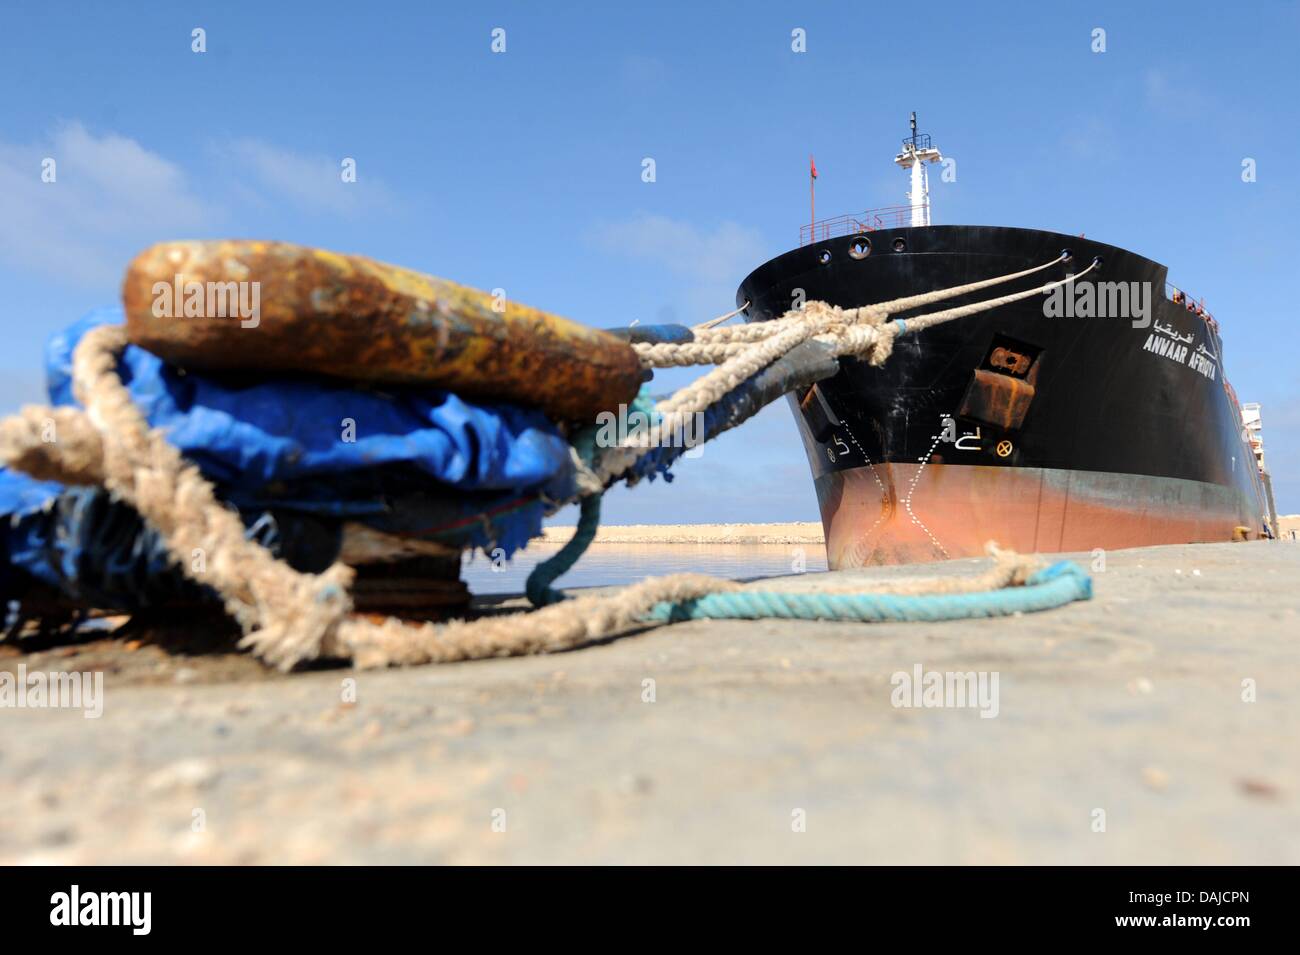 Der Öltanker "Anwaar Afriqya" in Bengasi Hafen, 5. April 2011. Zum ersten Mal ist Öl aus den von den libyschen Rebellen kontrollierten Gebieten exportiert werden. Foto: Maurizio Gambarini Stockfoto